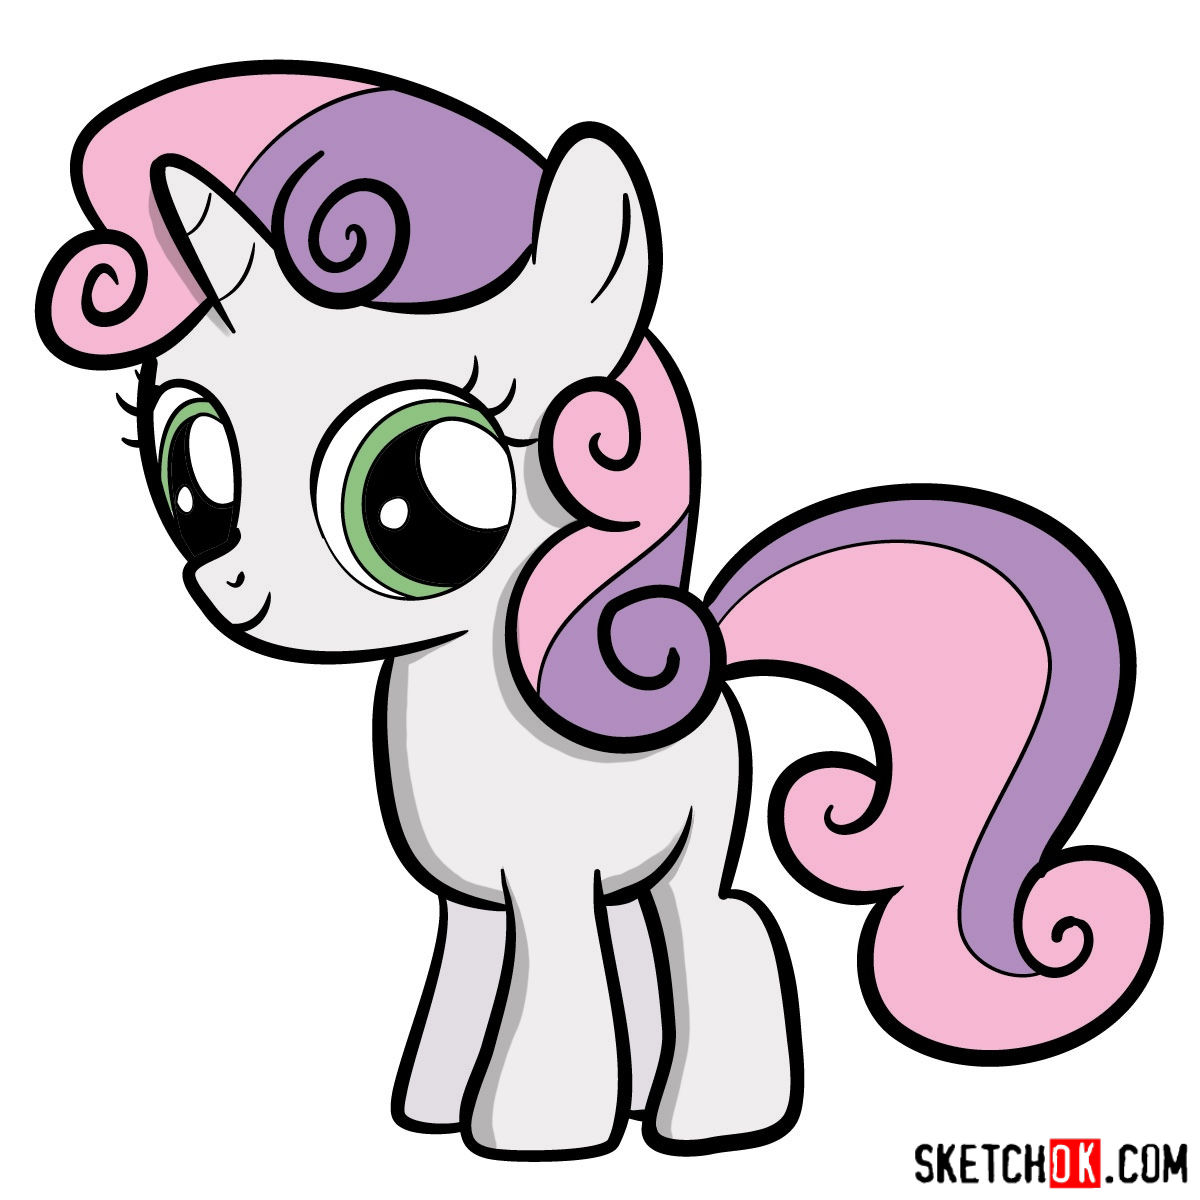 How to draw Sweetie Belle unicorn pony